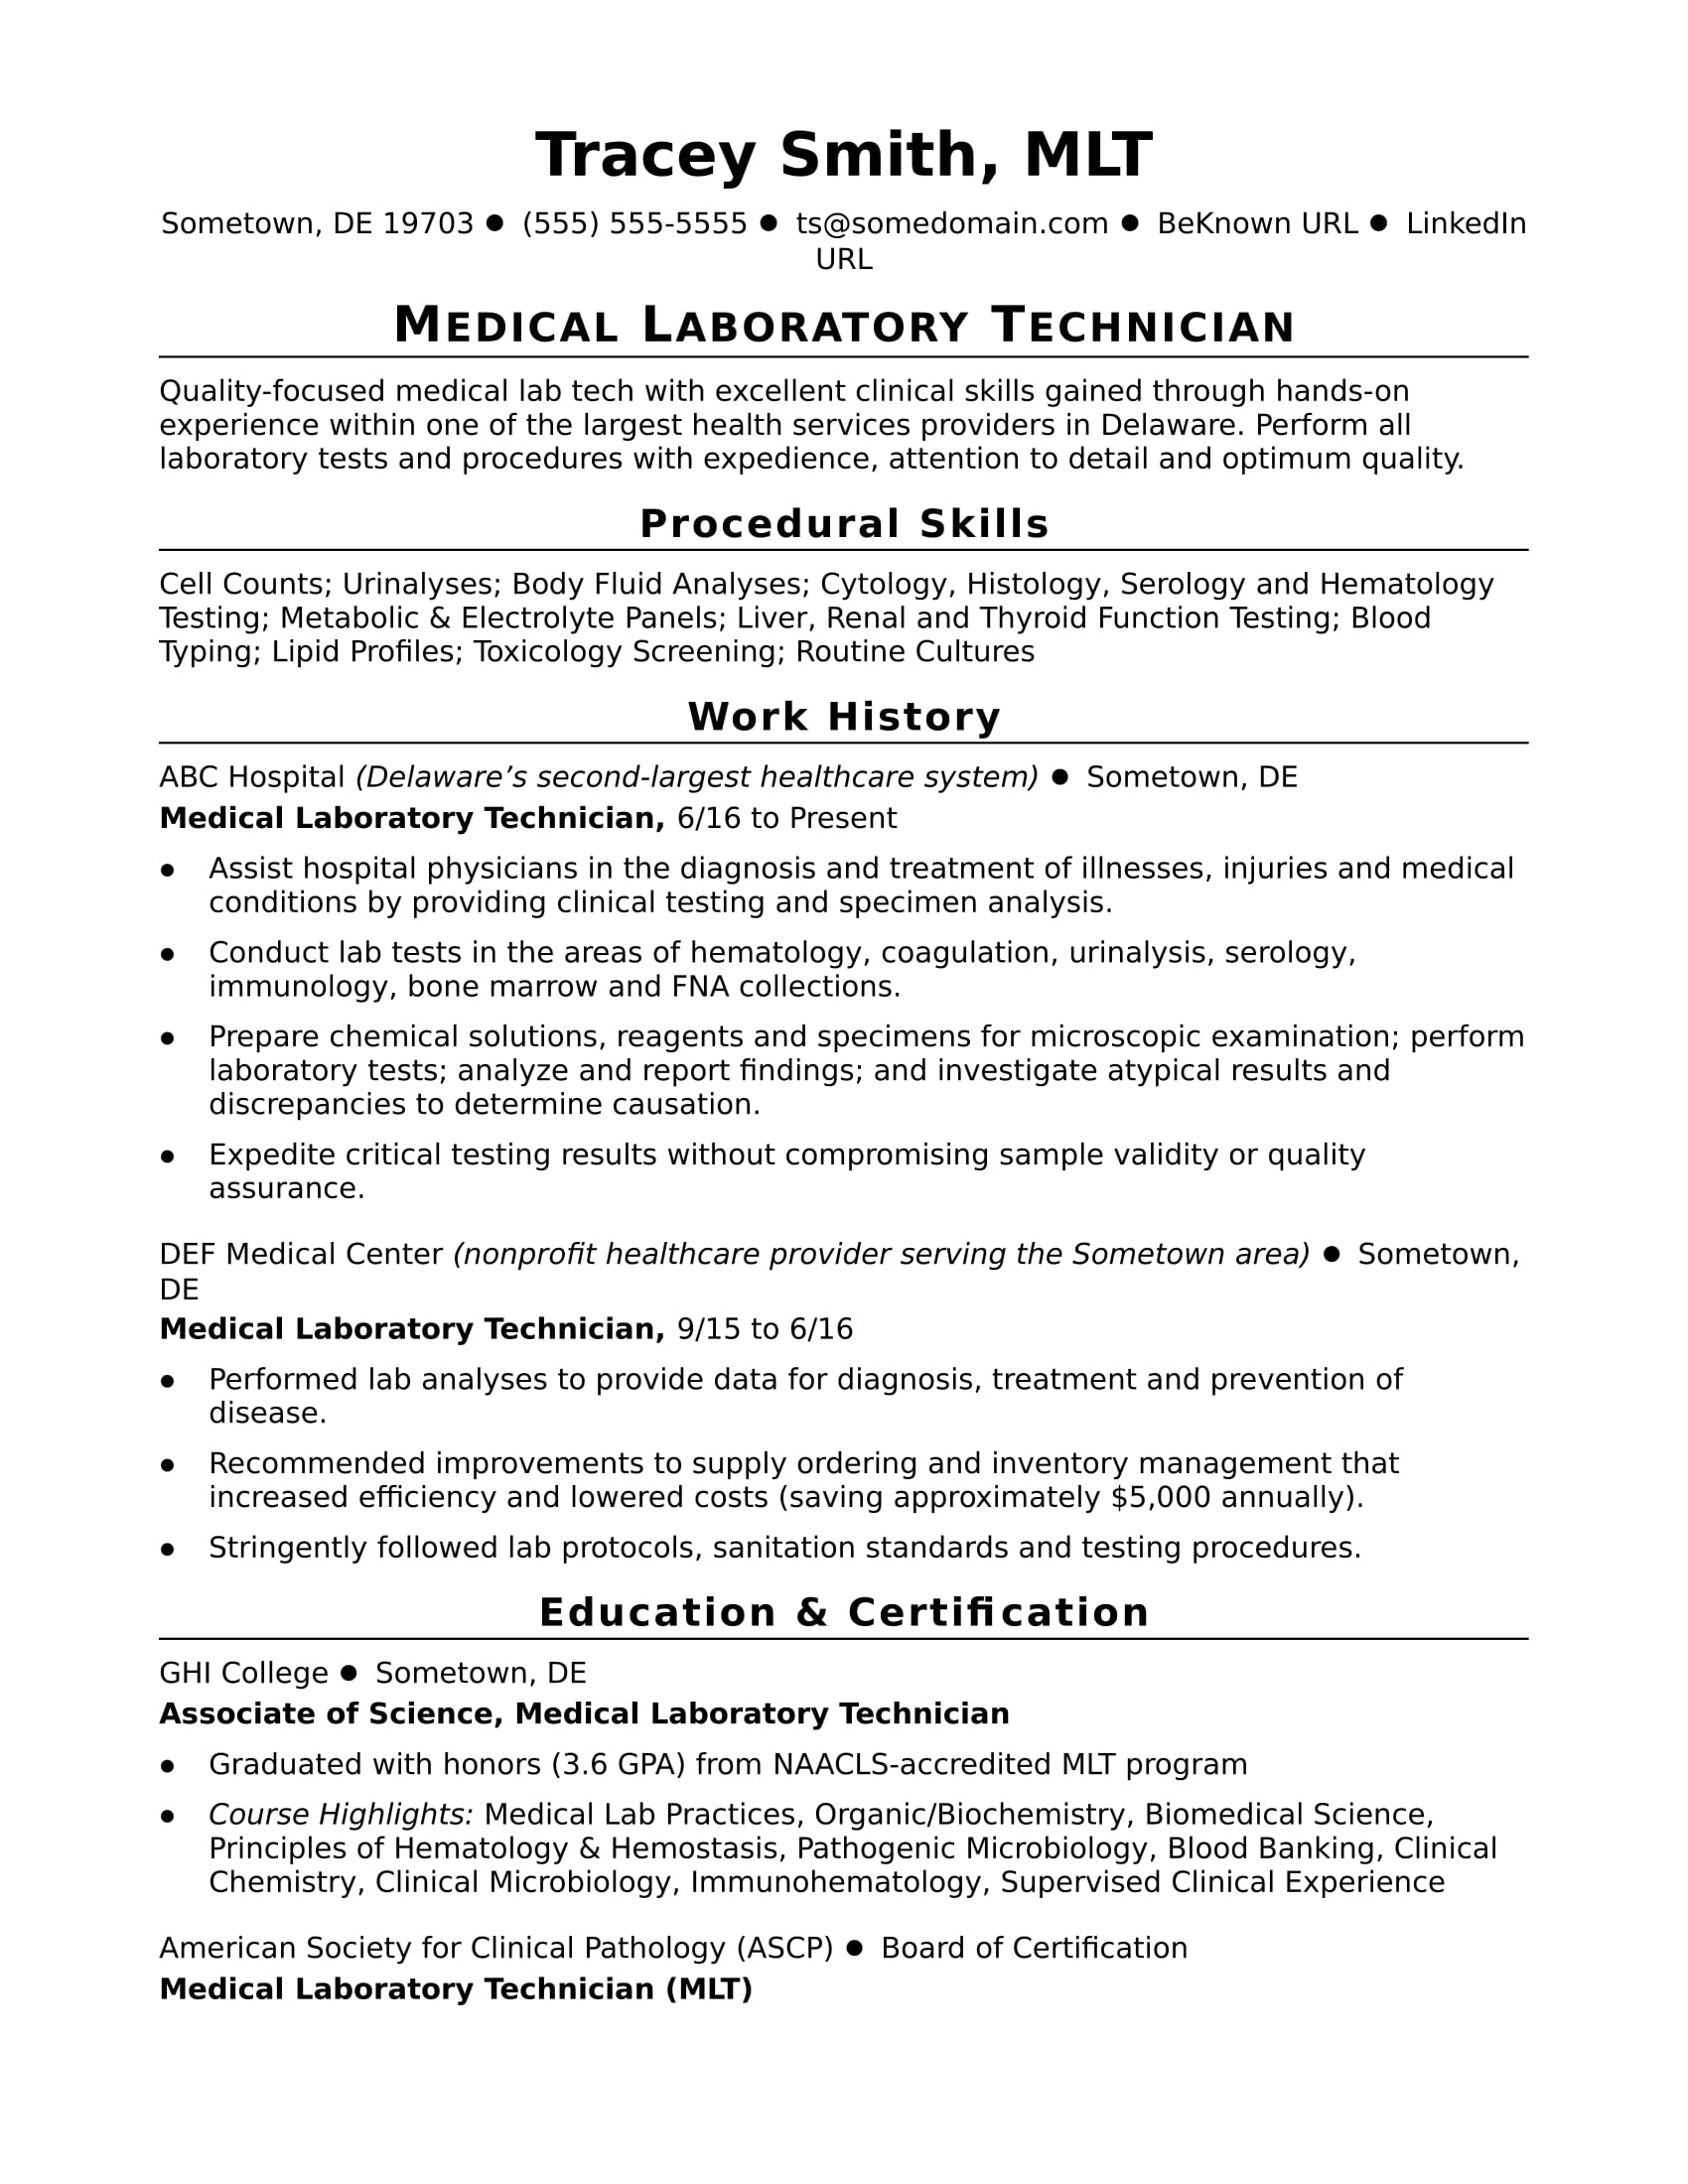 Cytology technician job description